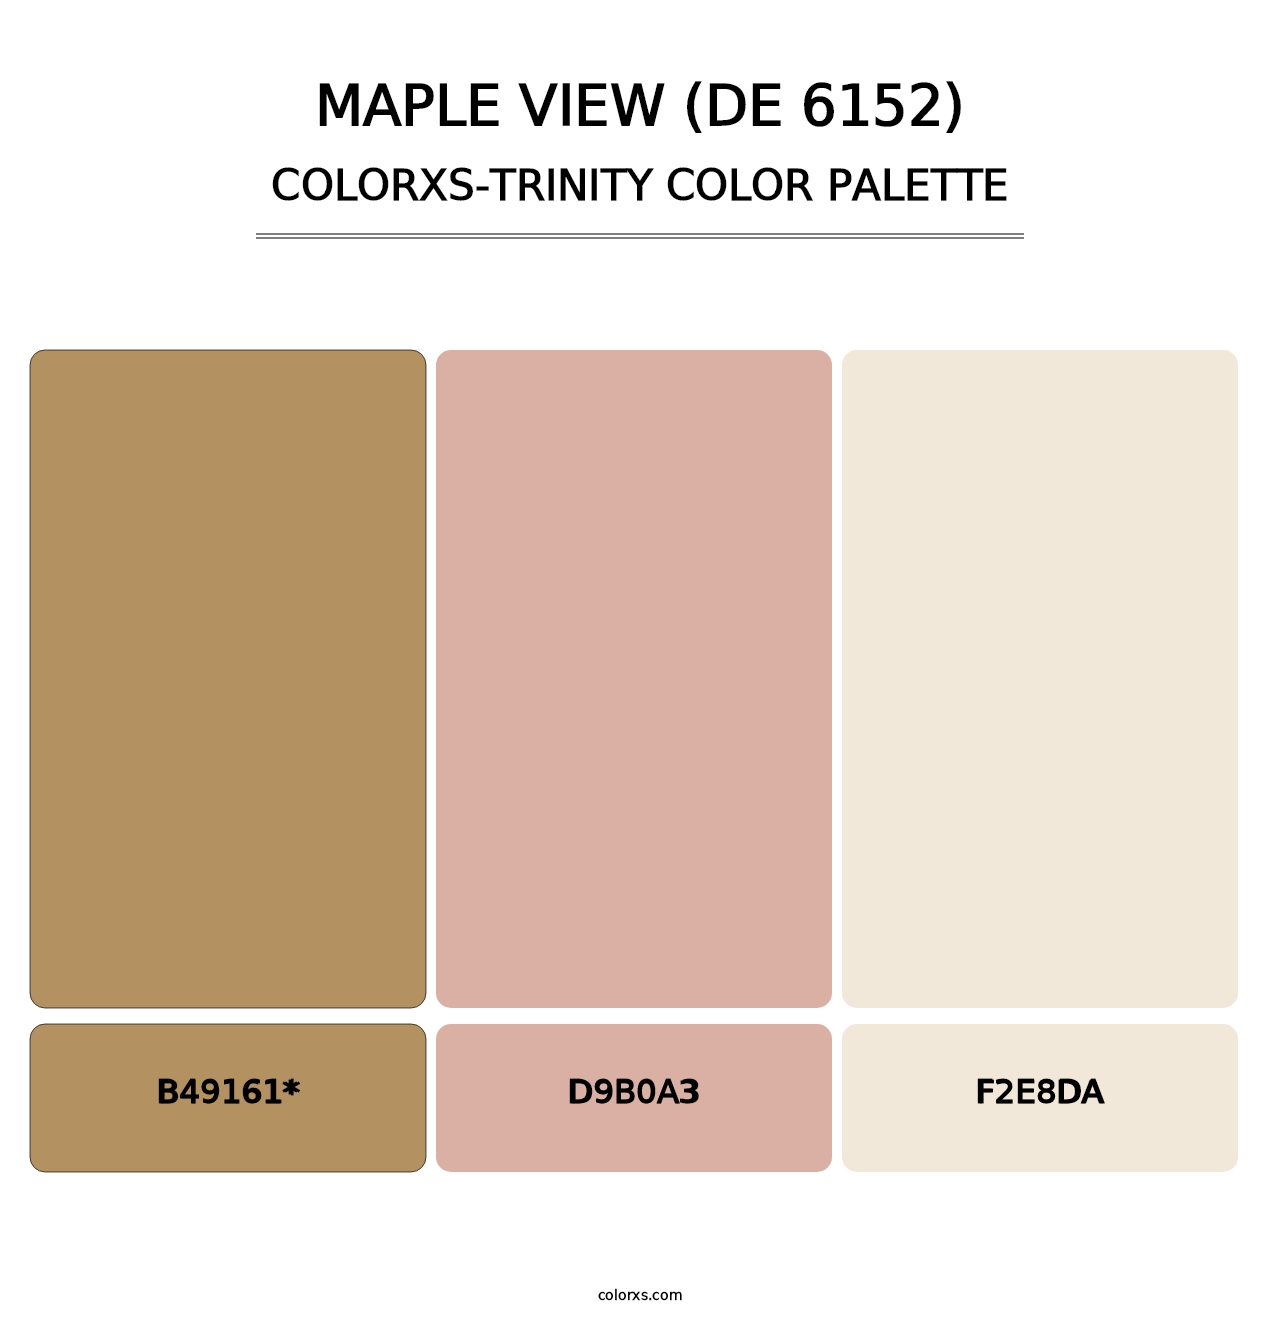 Maple View (DE 6152) - Colorxs Trinity Palette